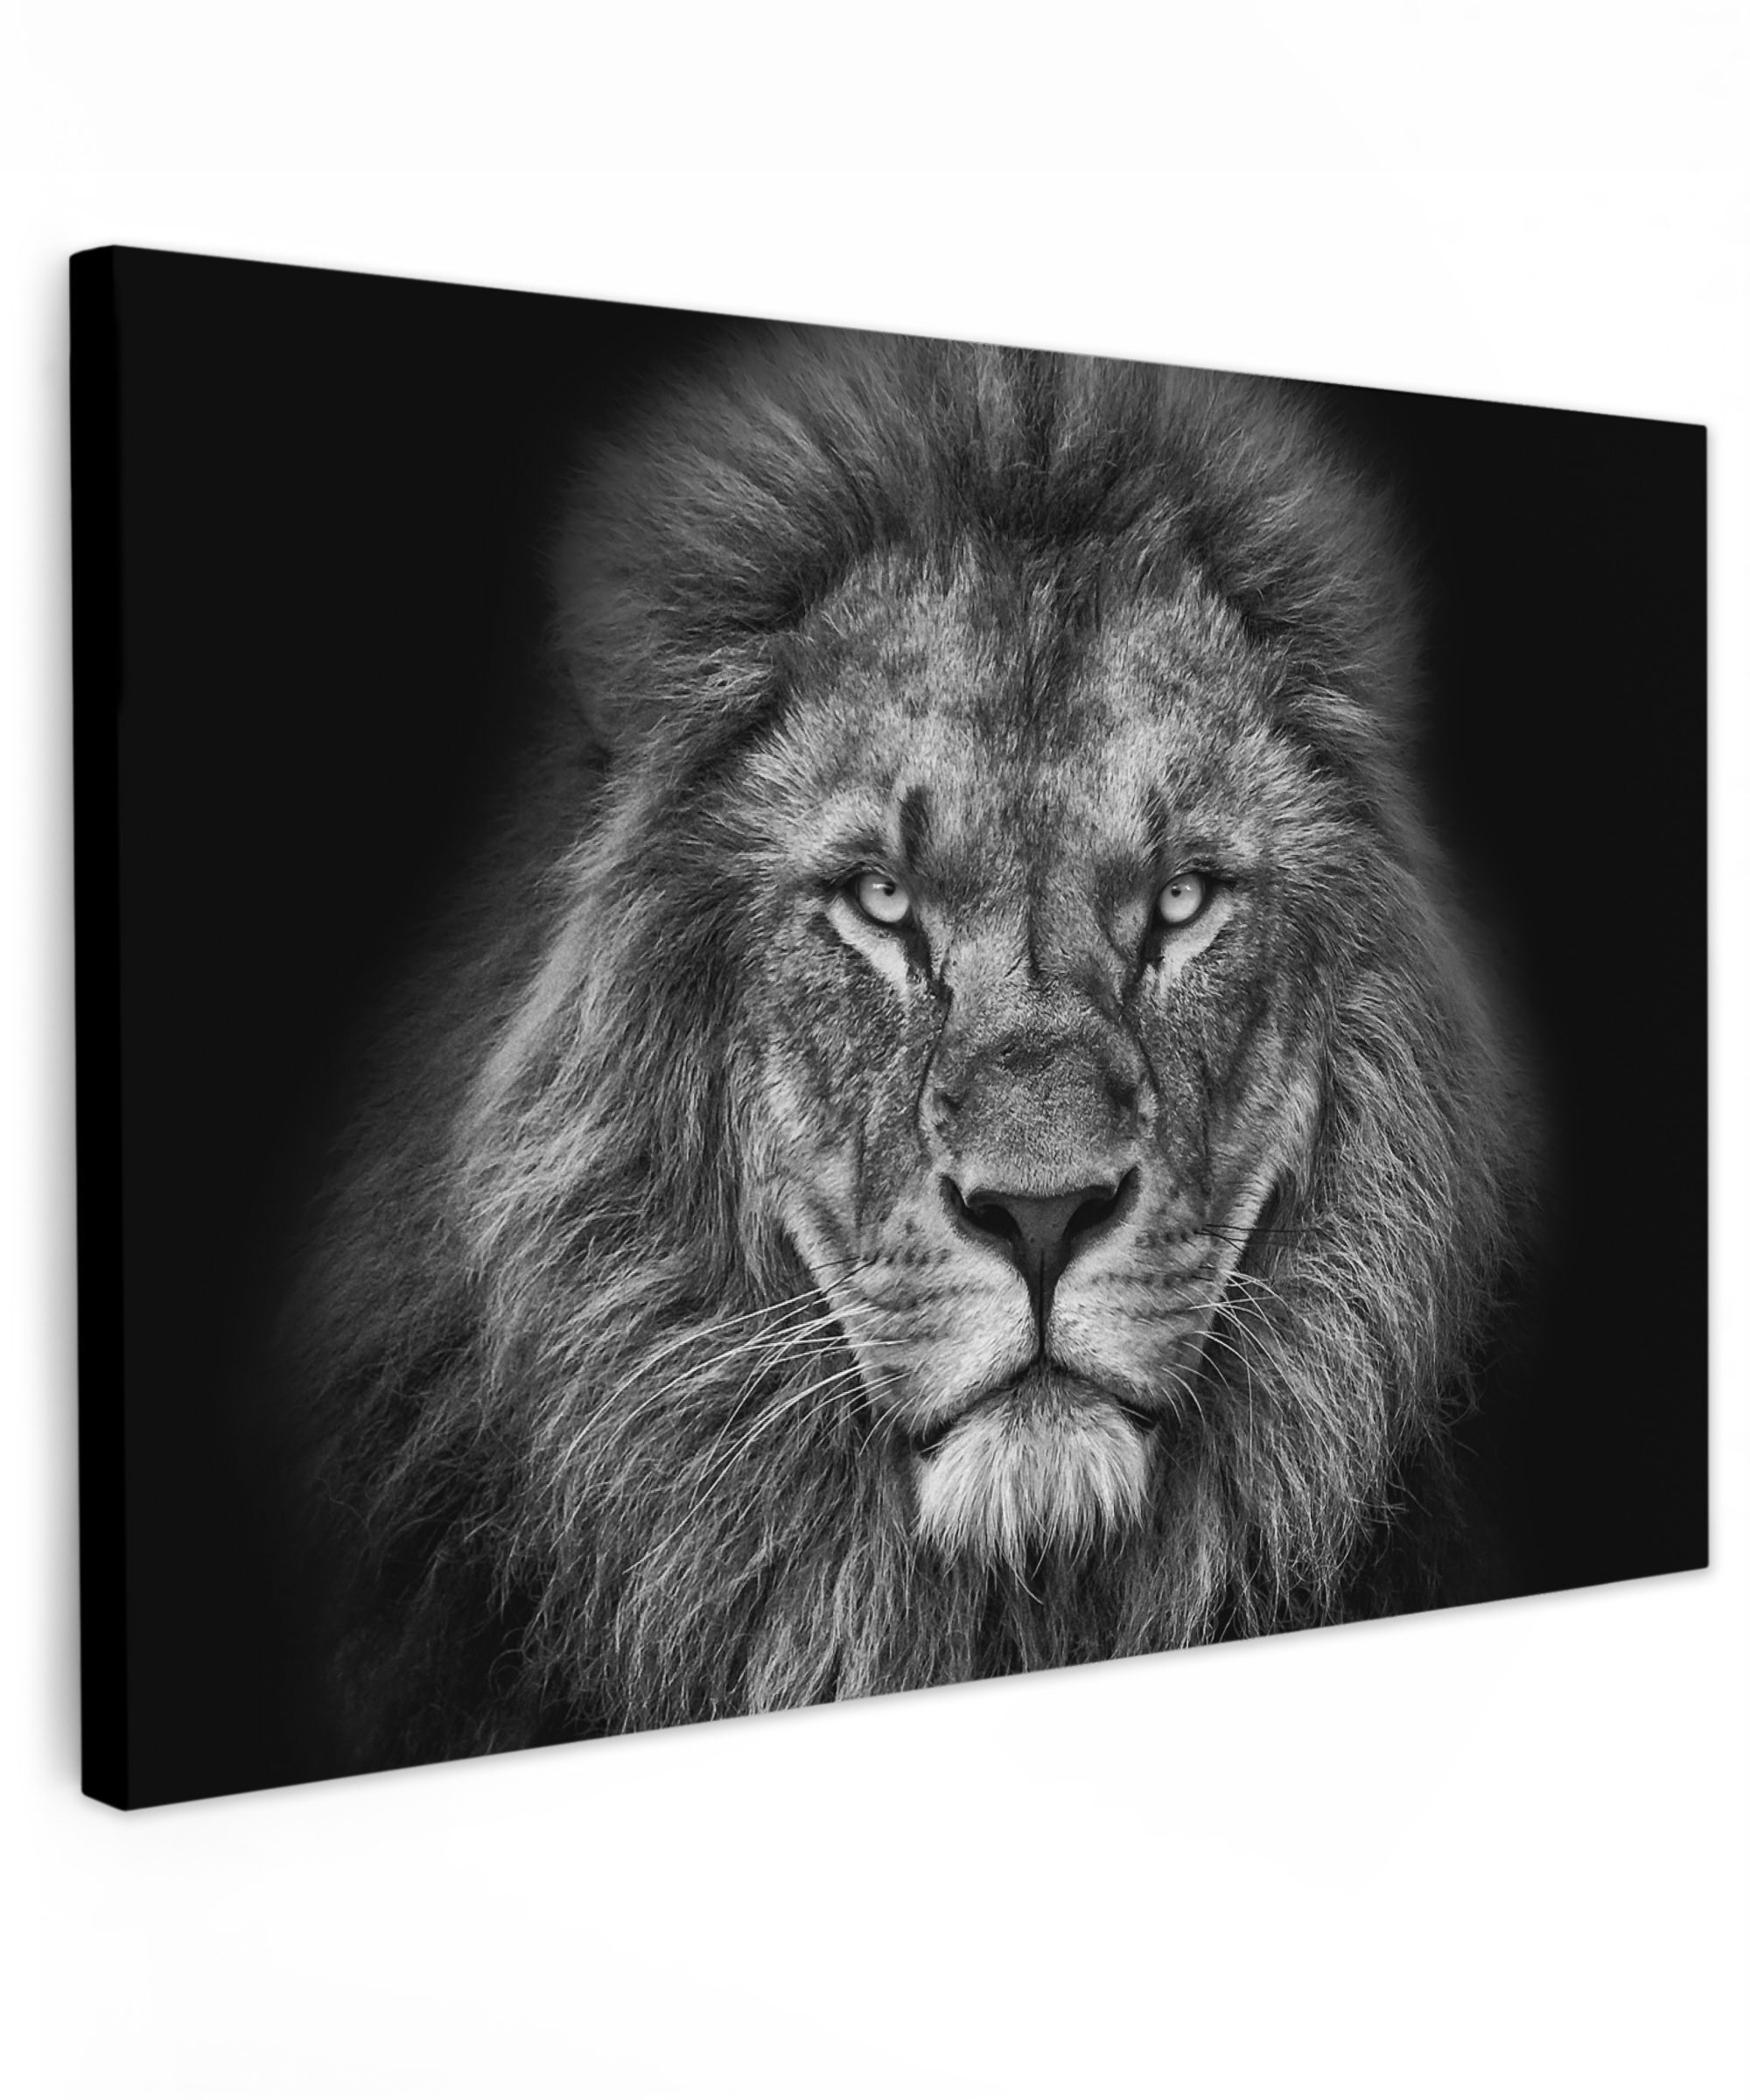 Leinwandbild - Tiere - Löwe - Schwarz - Weiß - Porträt